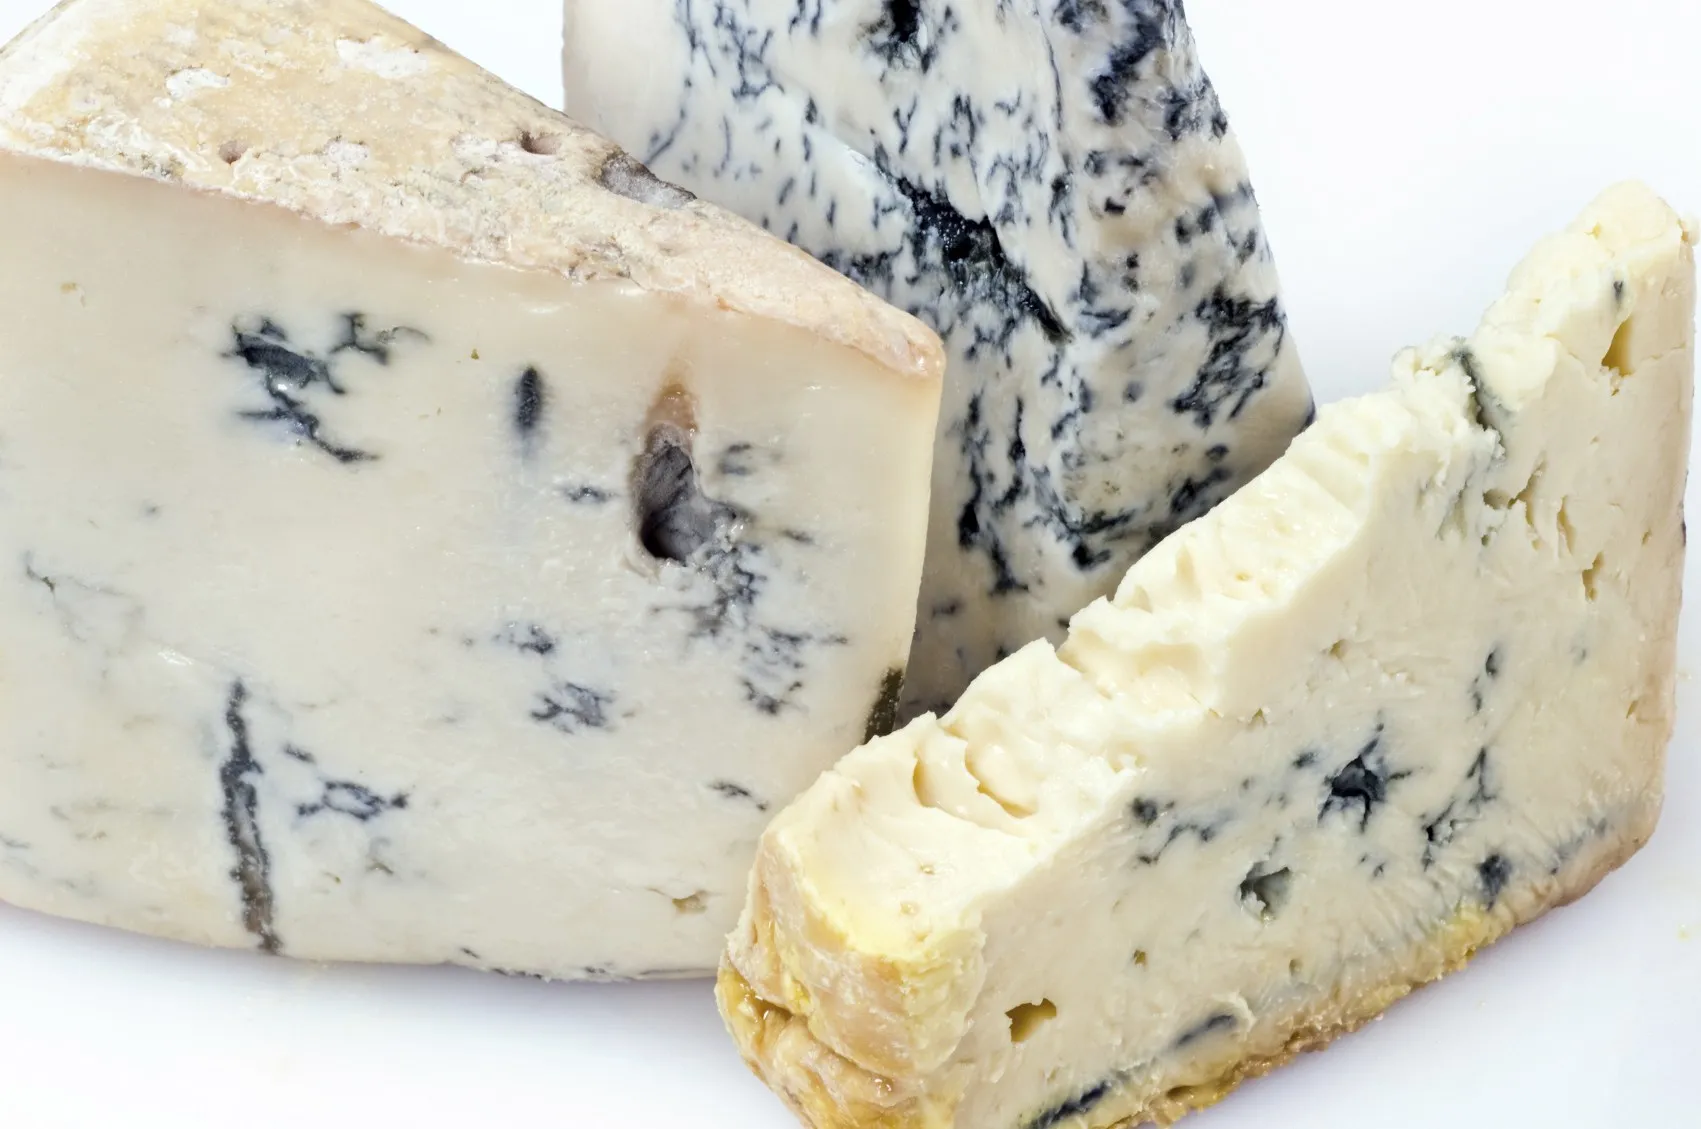 Mangiare formaggio ammuffito: ecco cosa può accadere al tuo corpo